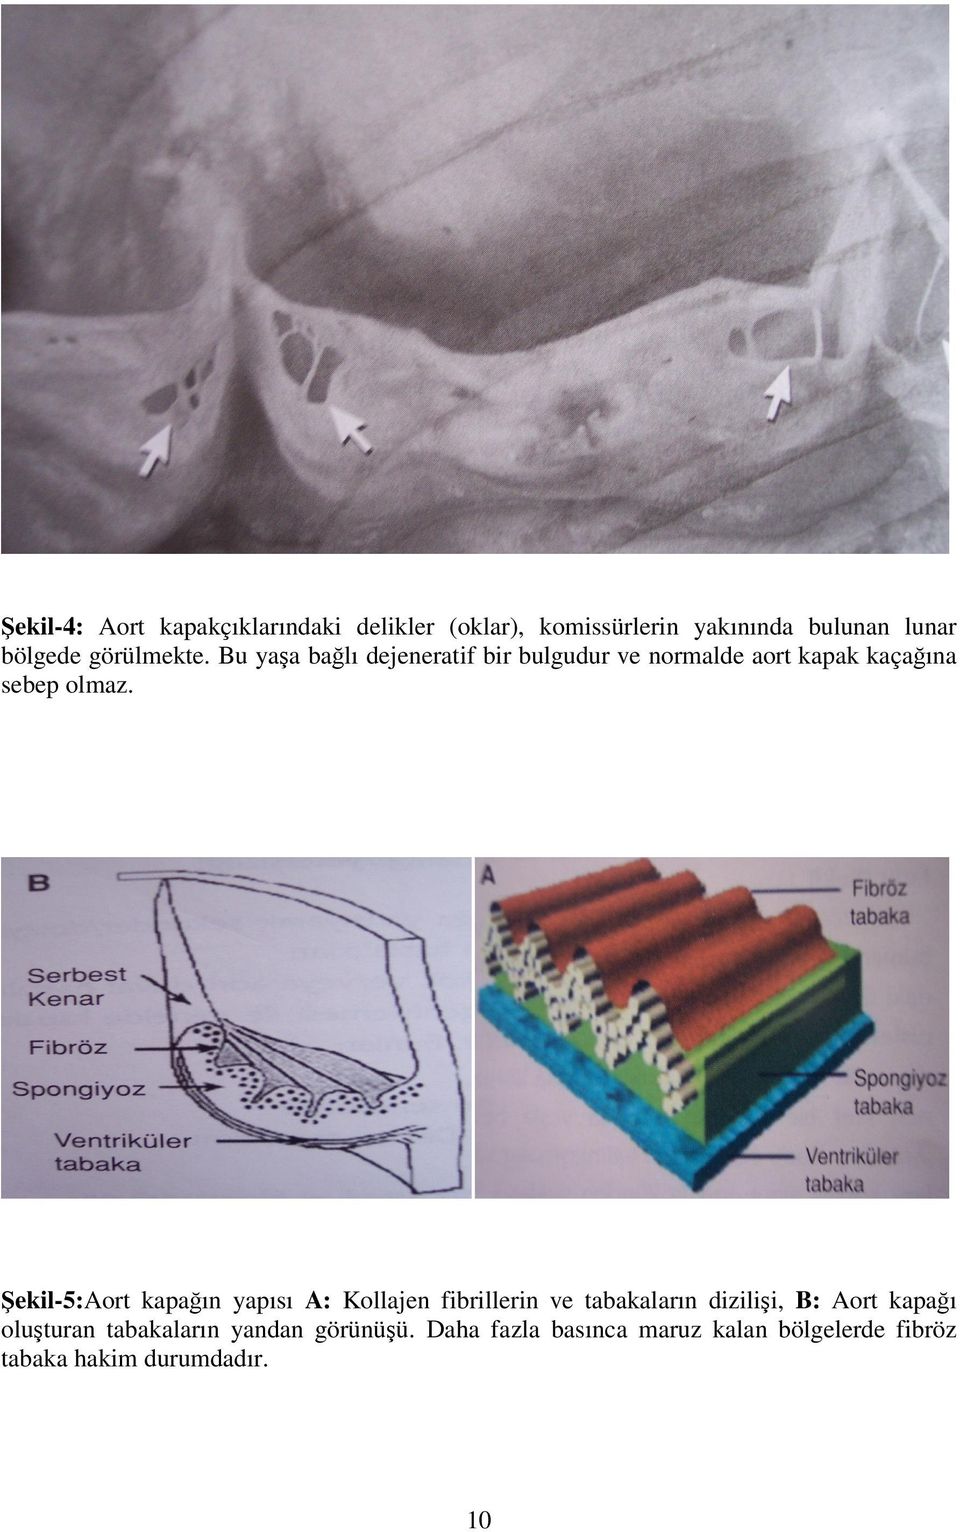 Şekil-5:Aort kapağın yapısı A: Kollajen fibrillerin ve tabakaların dizilişi, B: Aort kapağı